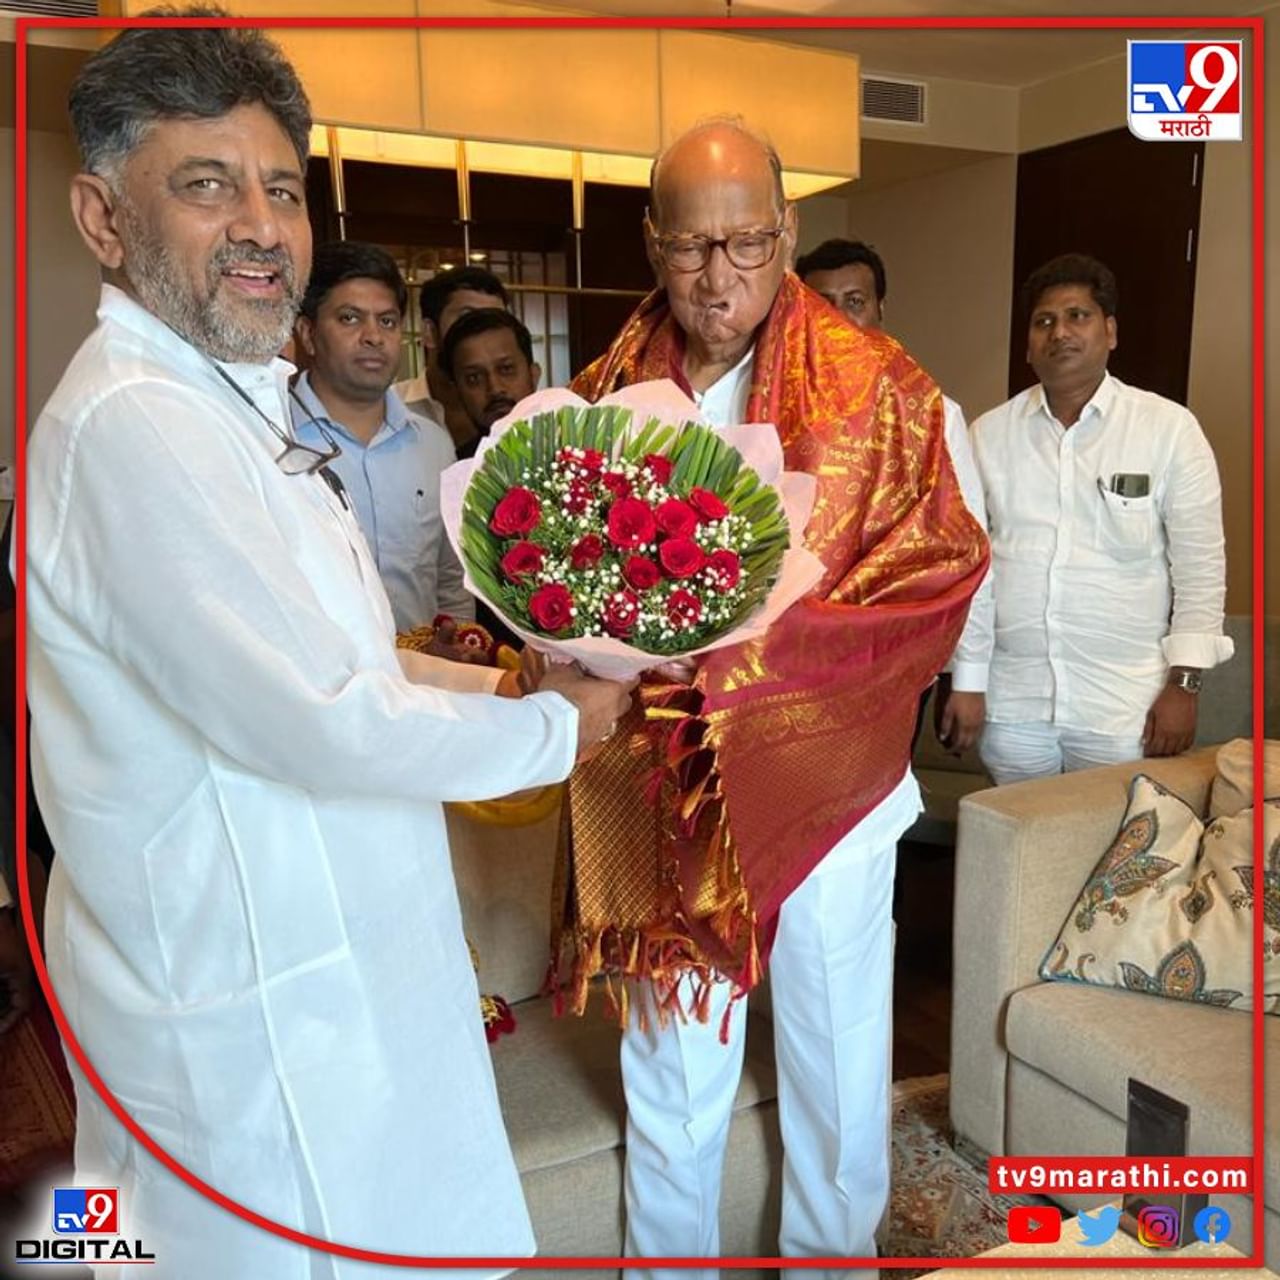 राष्ट्रवादीचे प्रमुख शरद पवार कर्नाटक राज्याच्या दौऱ्यावर आहेत त्यानिनित्त कर्नाटक प्रदेश काँग्रेसच अध्यक्ष डी. के. शिवकुमार यांनी त्यांचे स्वागत केले. 